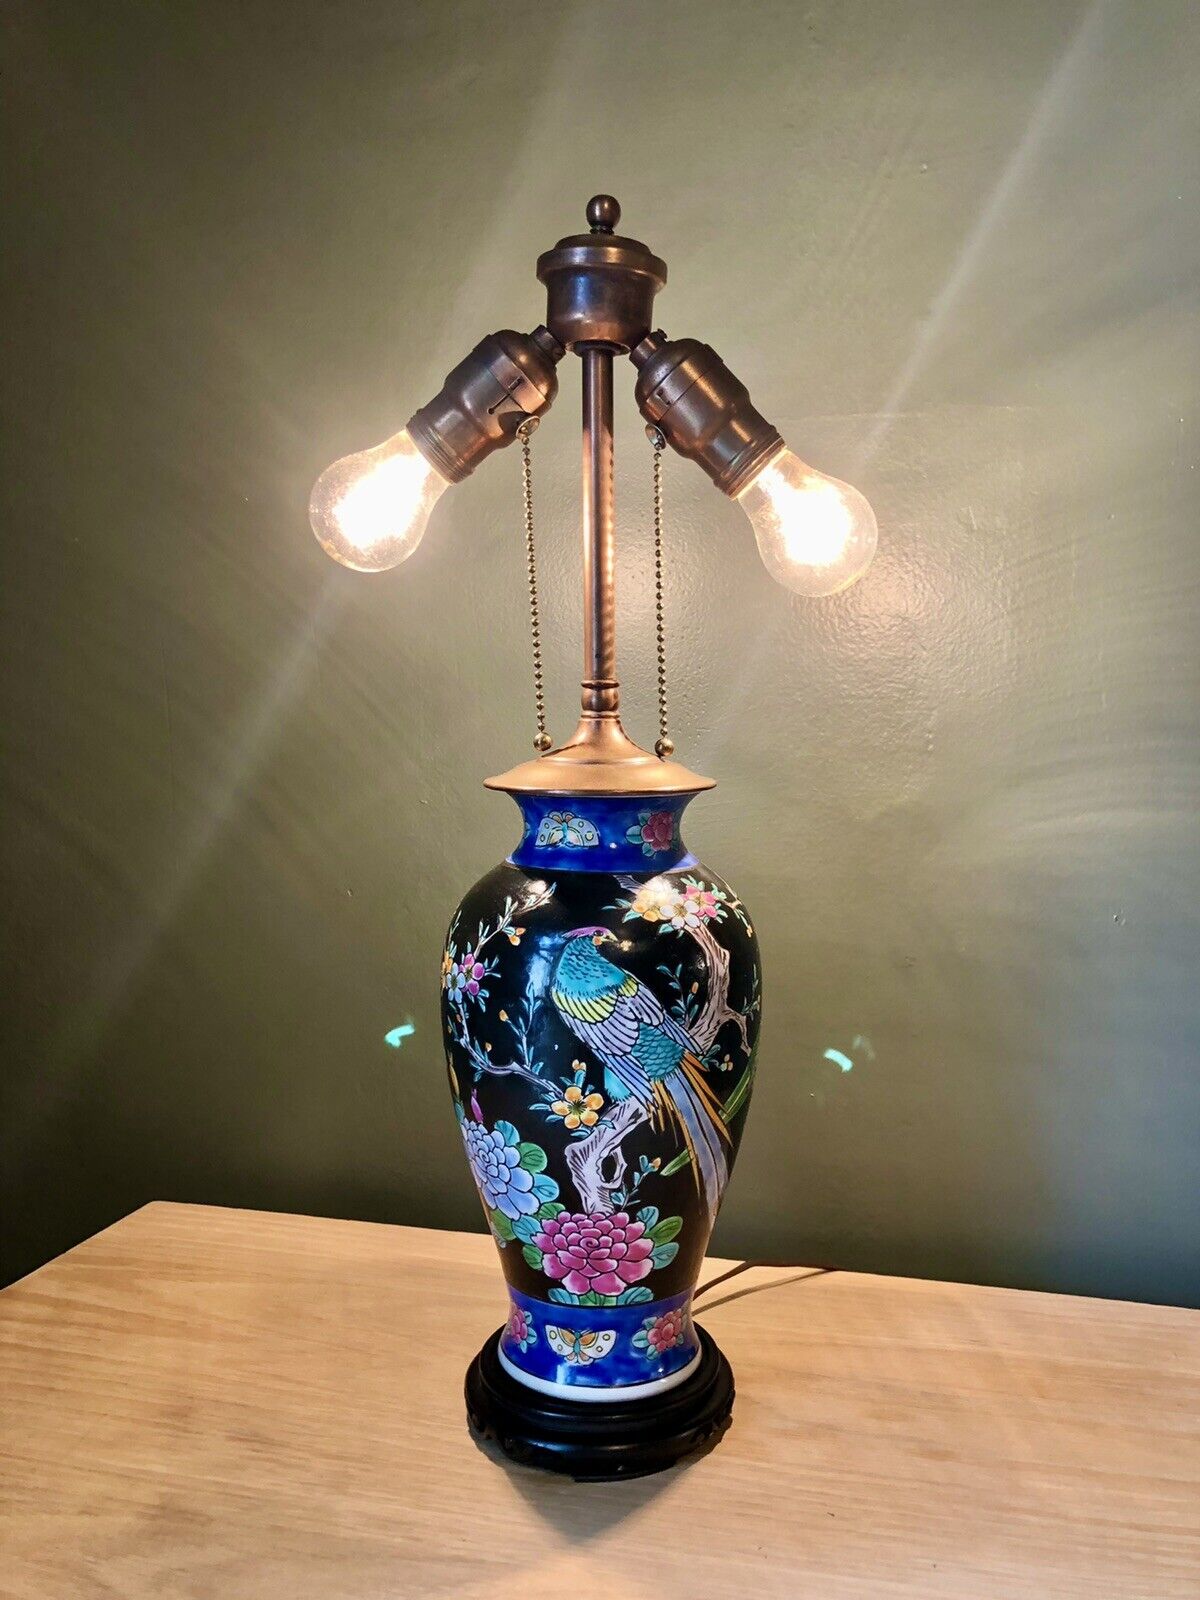 20” Chinese Vintage Lamp Vase Oriental Vase Wildflowers Birds Of Paradise Dual